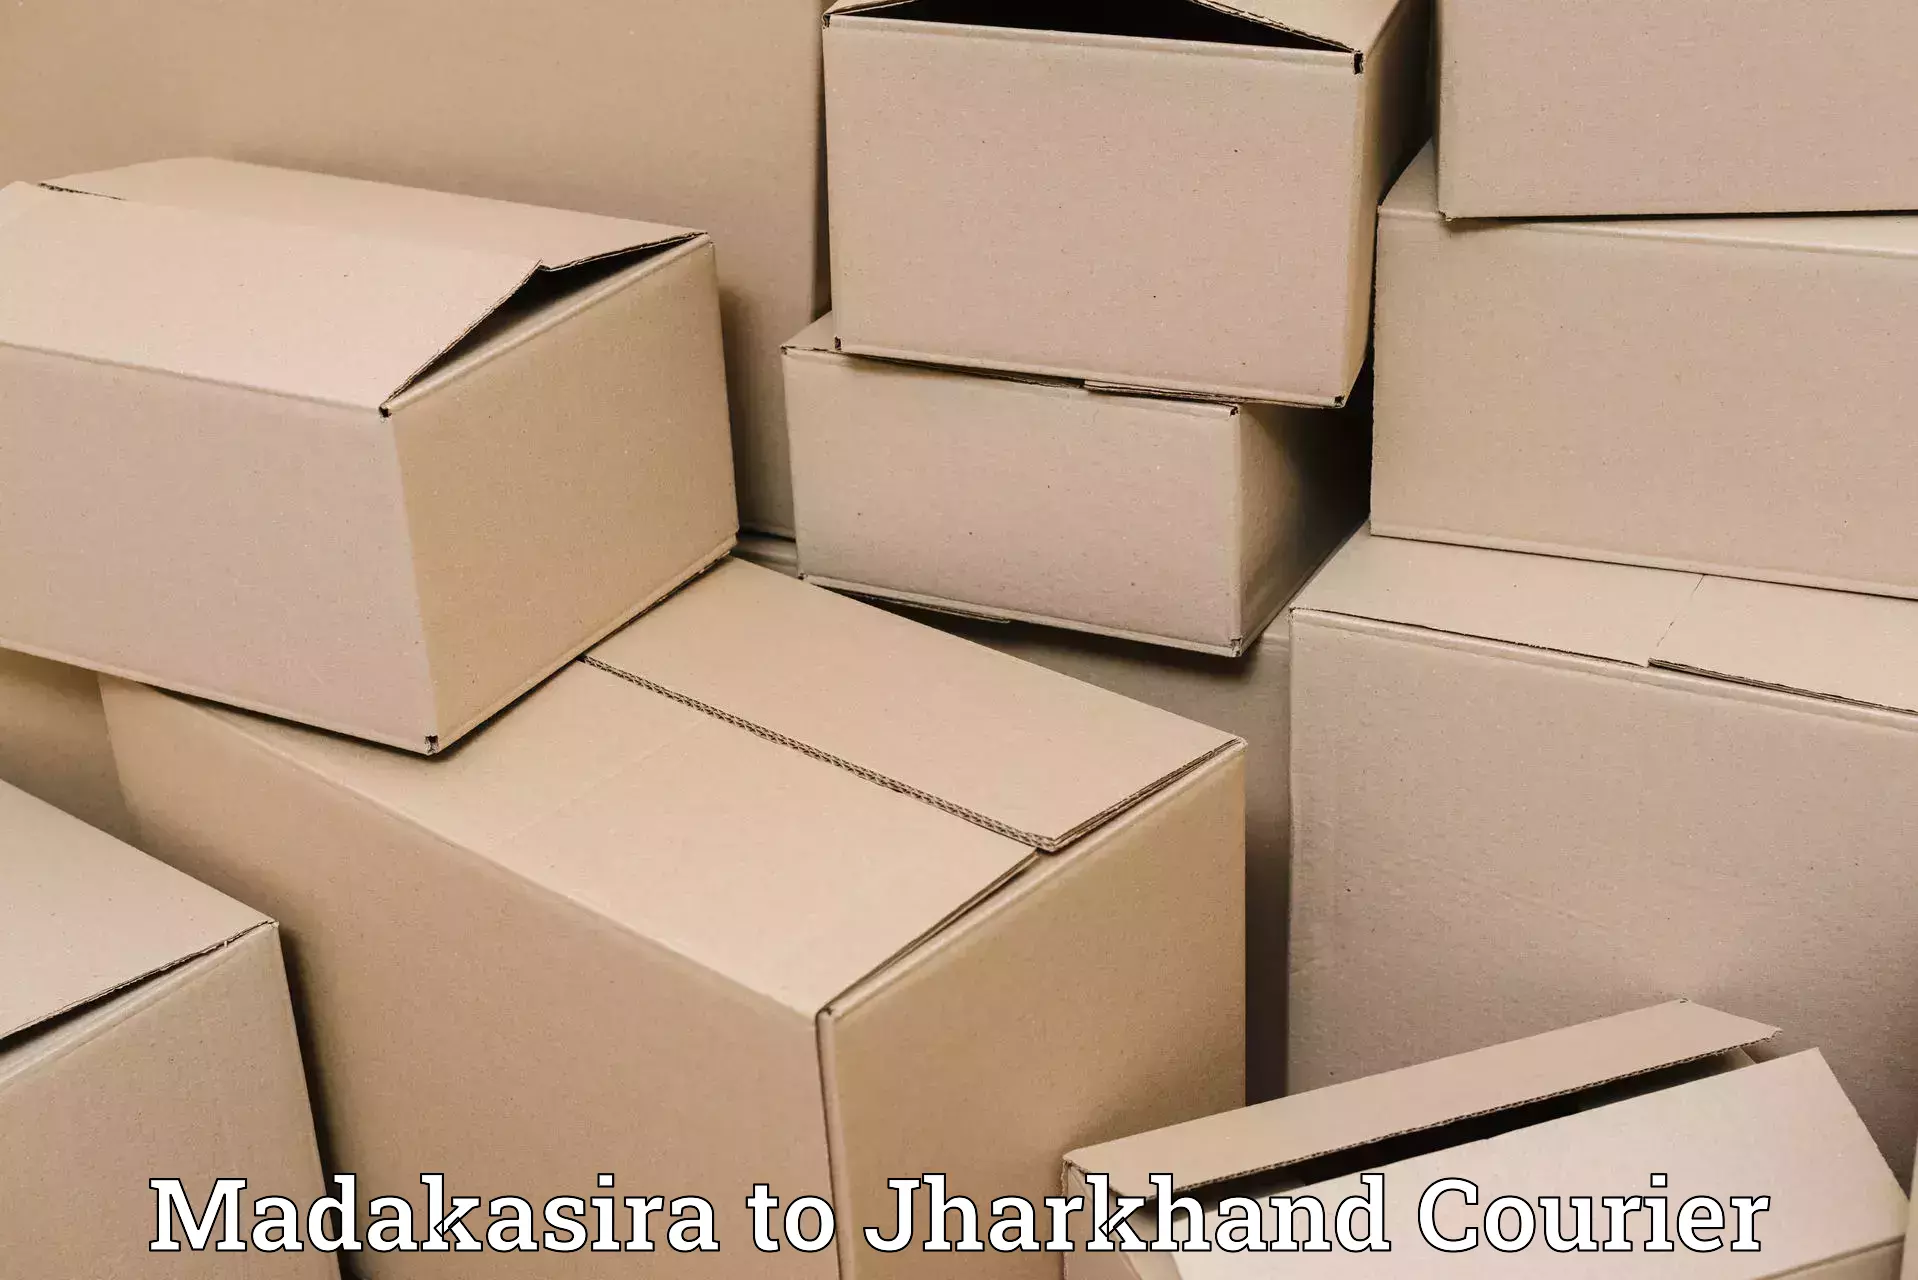 Expedited shipping methods Madakasira to Jharkhand